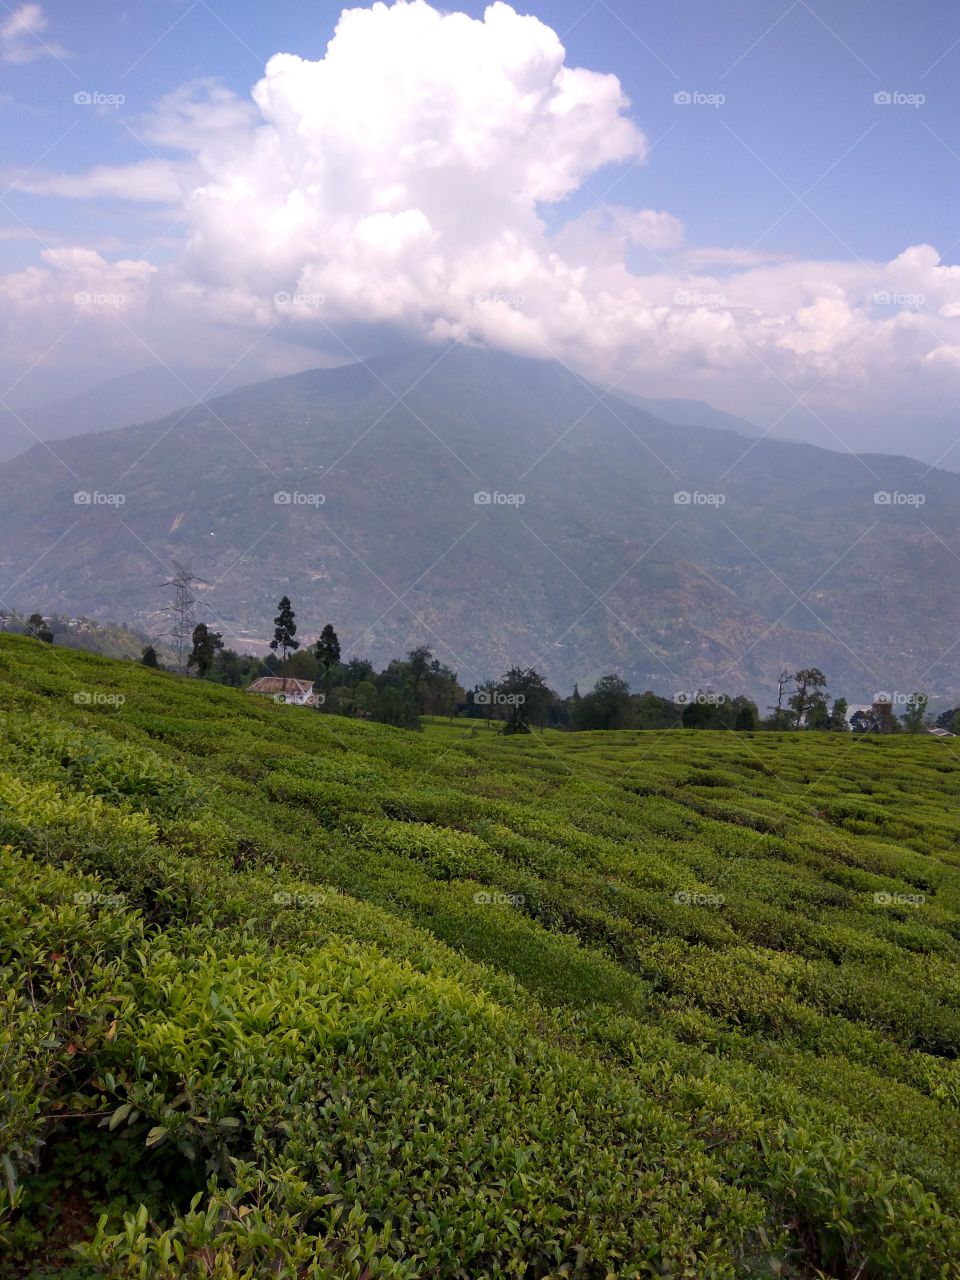 Mountain Tea garden